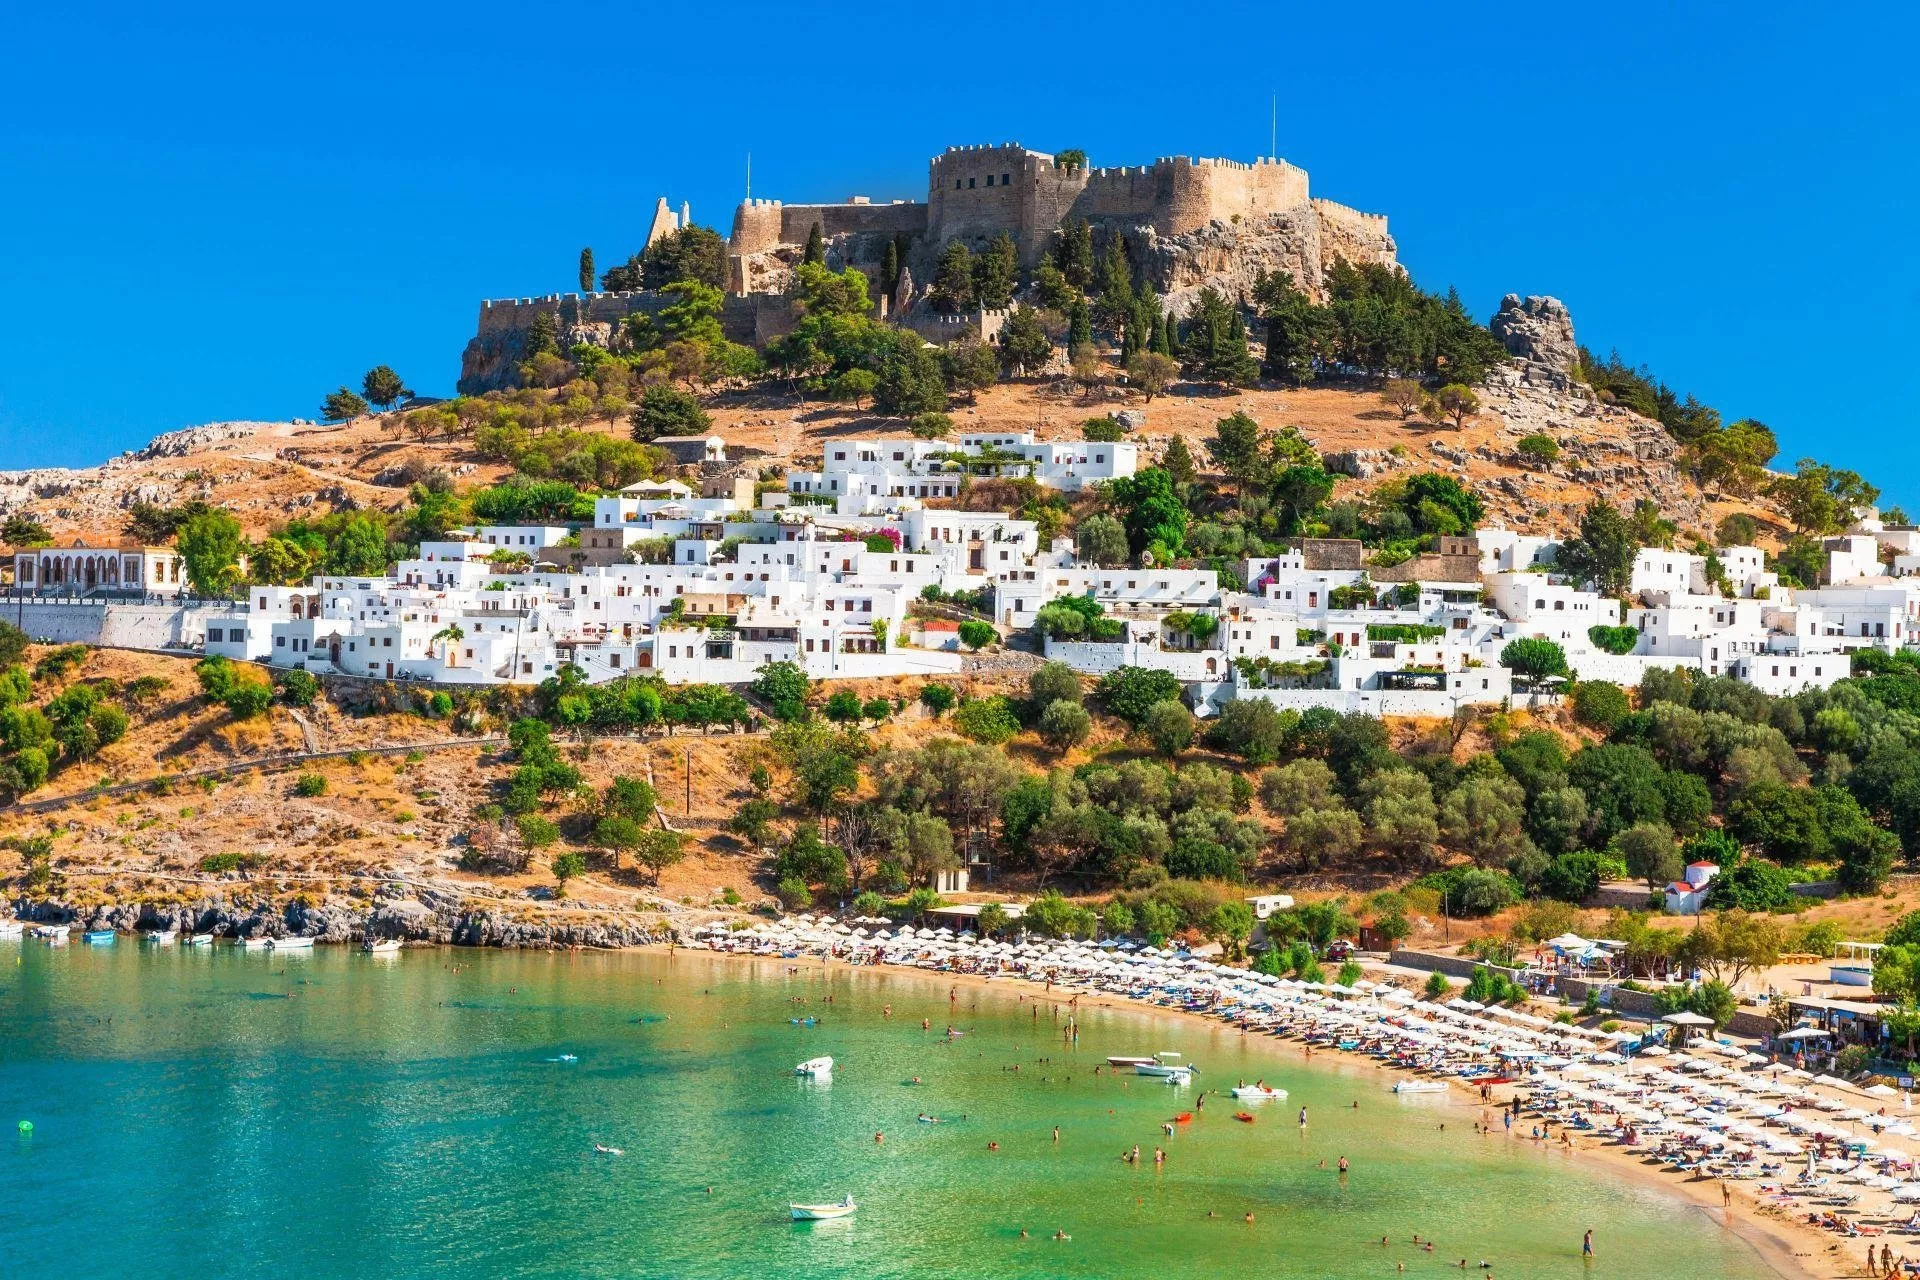 السياحة في اليونان: أجمل الأماكن السياحية فيها التي ستجعلكِ تخطّطين للسفر إليها الآن